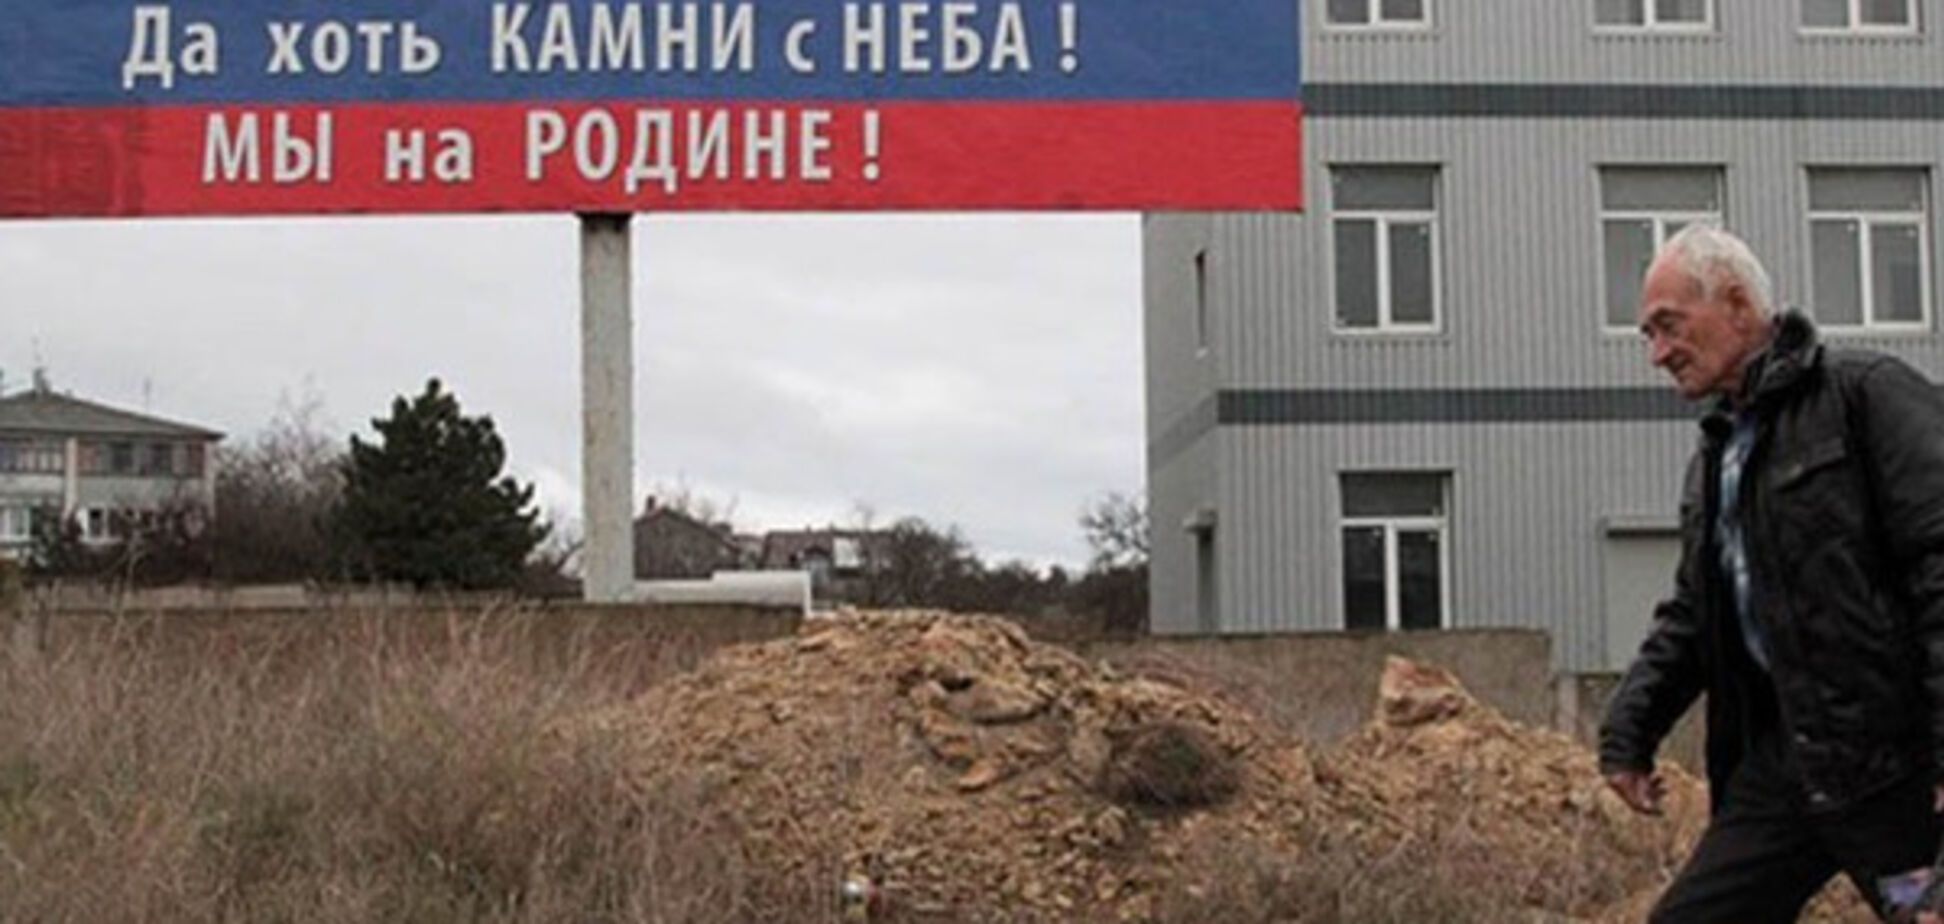 'Камни с неба': активист рассказал, как поменялись настроения в Крыму